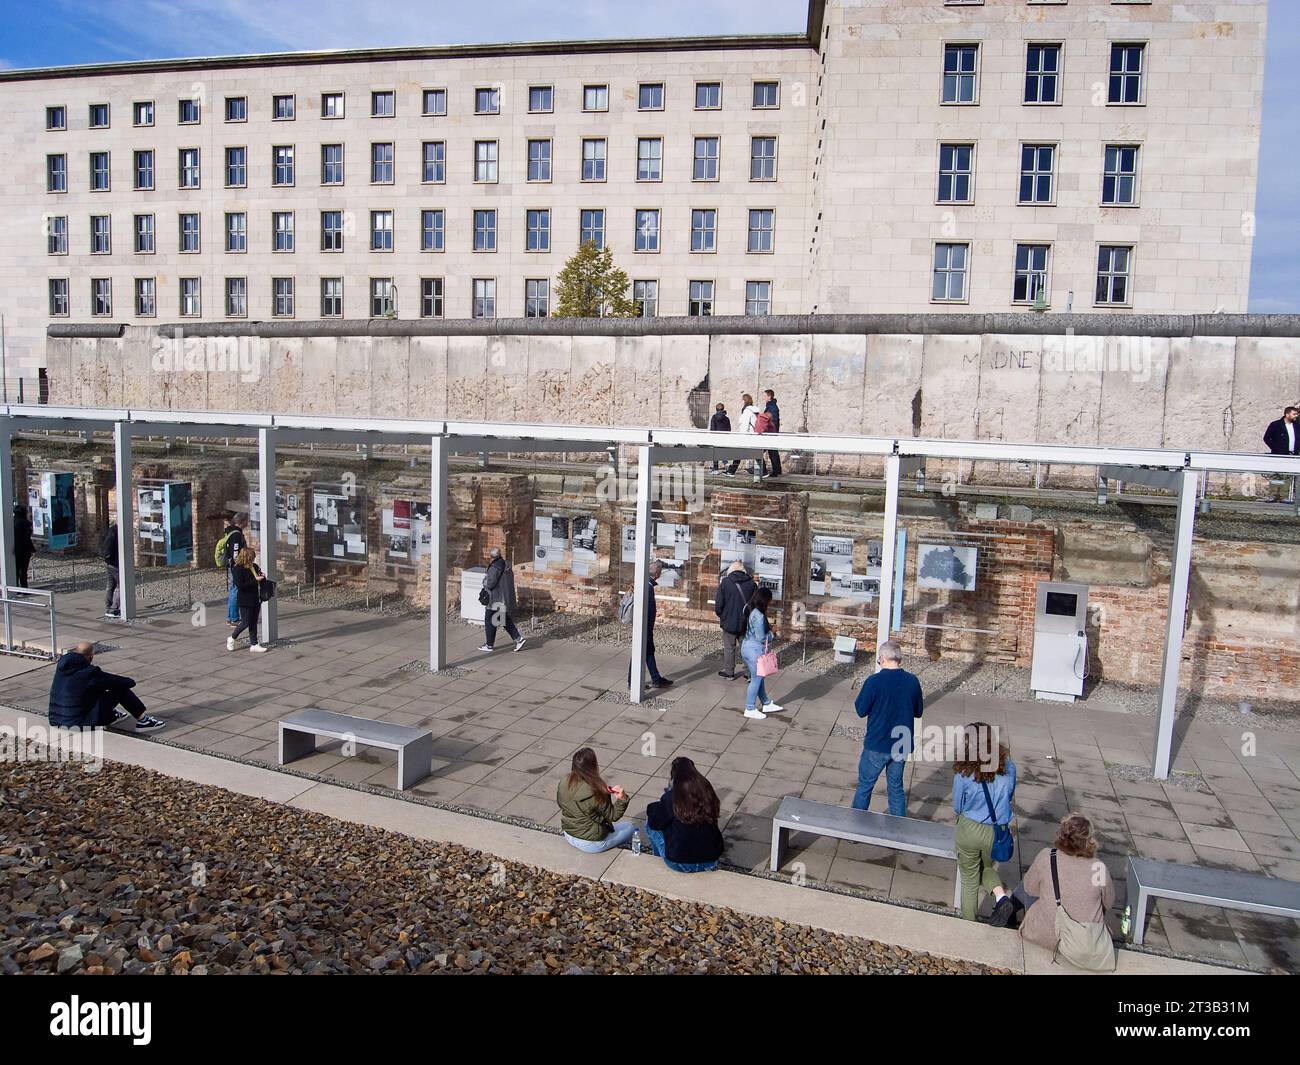 Alemania, Berlín, Niederkirchnerstrasse, Topografía del Terror, centro moderno en el sitio de la antigua sede de la Gestapo, documentando los horrores del nazismo. Foto de stock